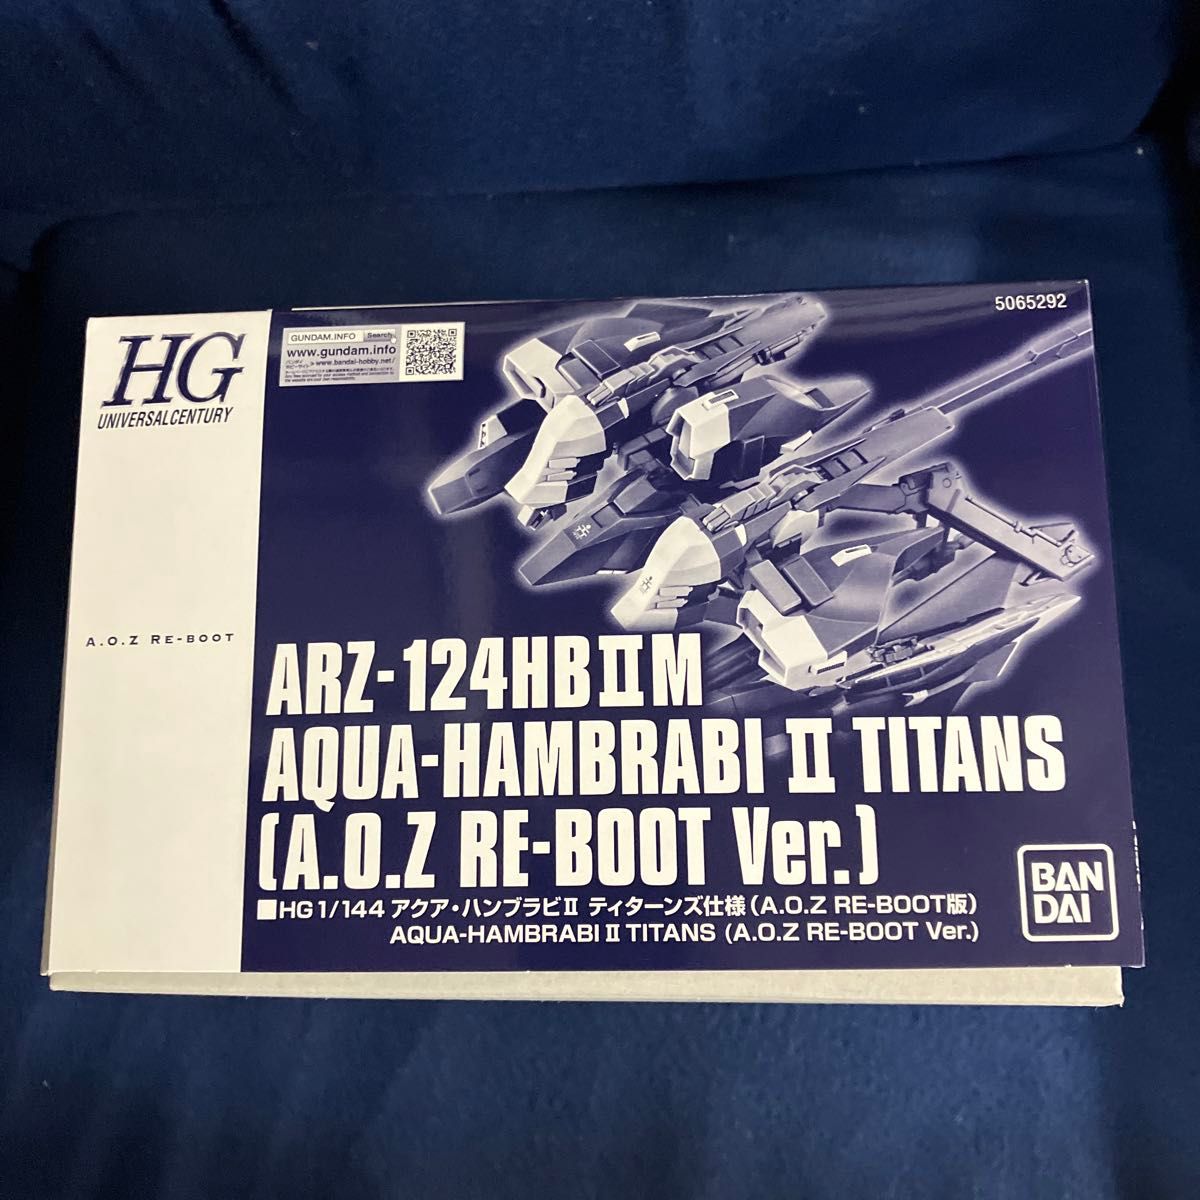 ARZ-124HBIIM アクアハンブラビＩＩ ティターンズ仕様 (A.O.Z RE-BOOT版) (A.O.Z RE-B…